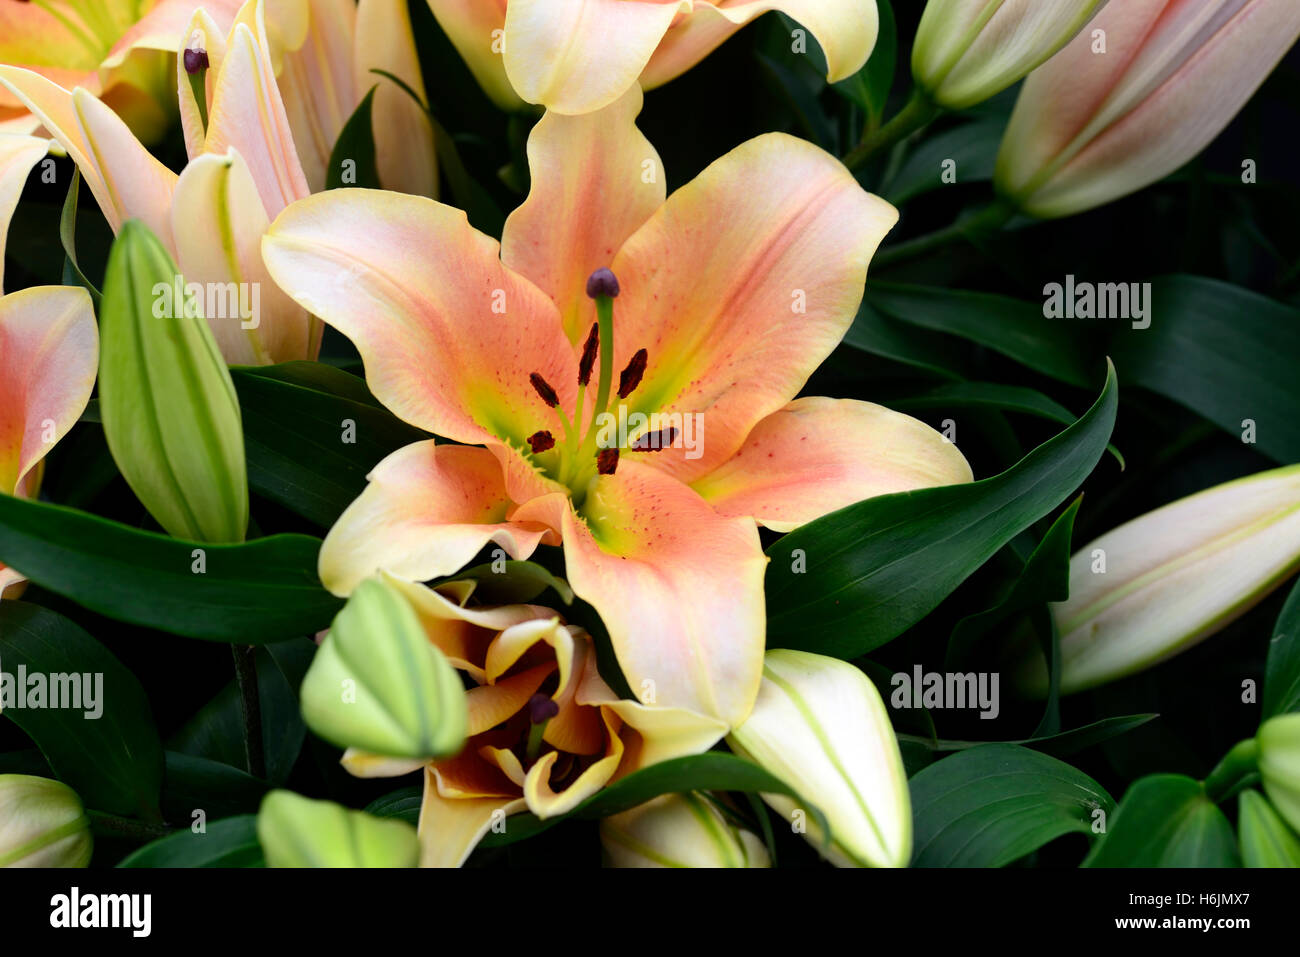 Lilium Zelmira Orienpet Lilie Lilien Lachs orange Farbe Farbe Blume Blumen Blüte Duft parfümiert duftende RM Floral Stockfoto